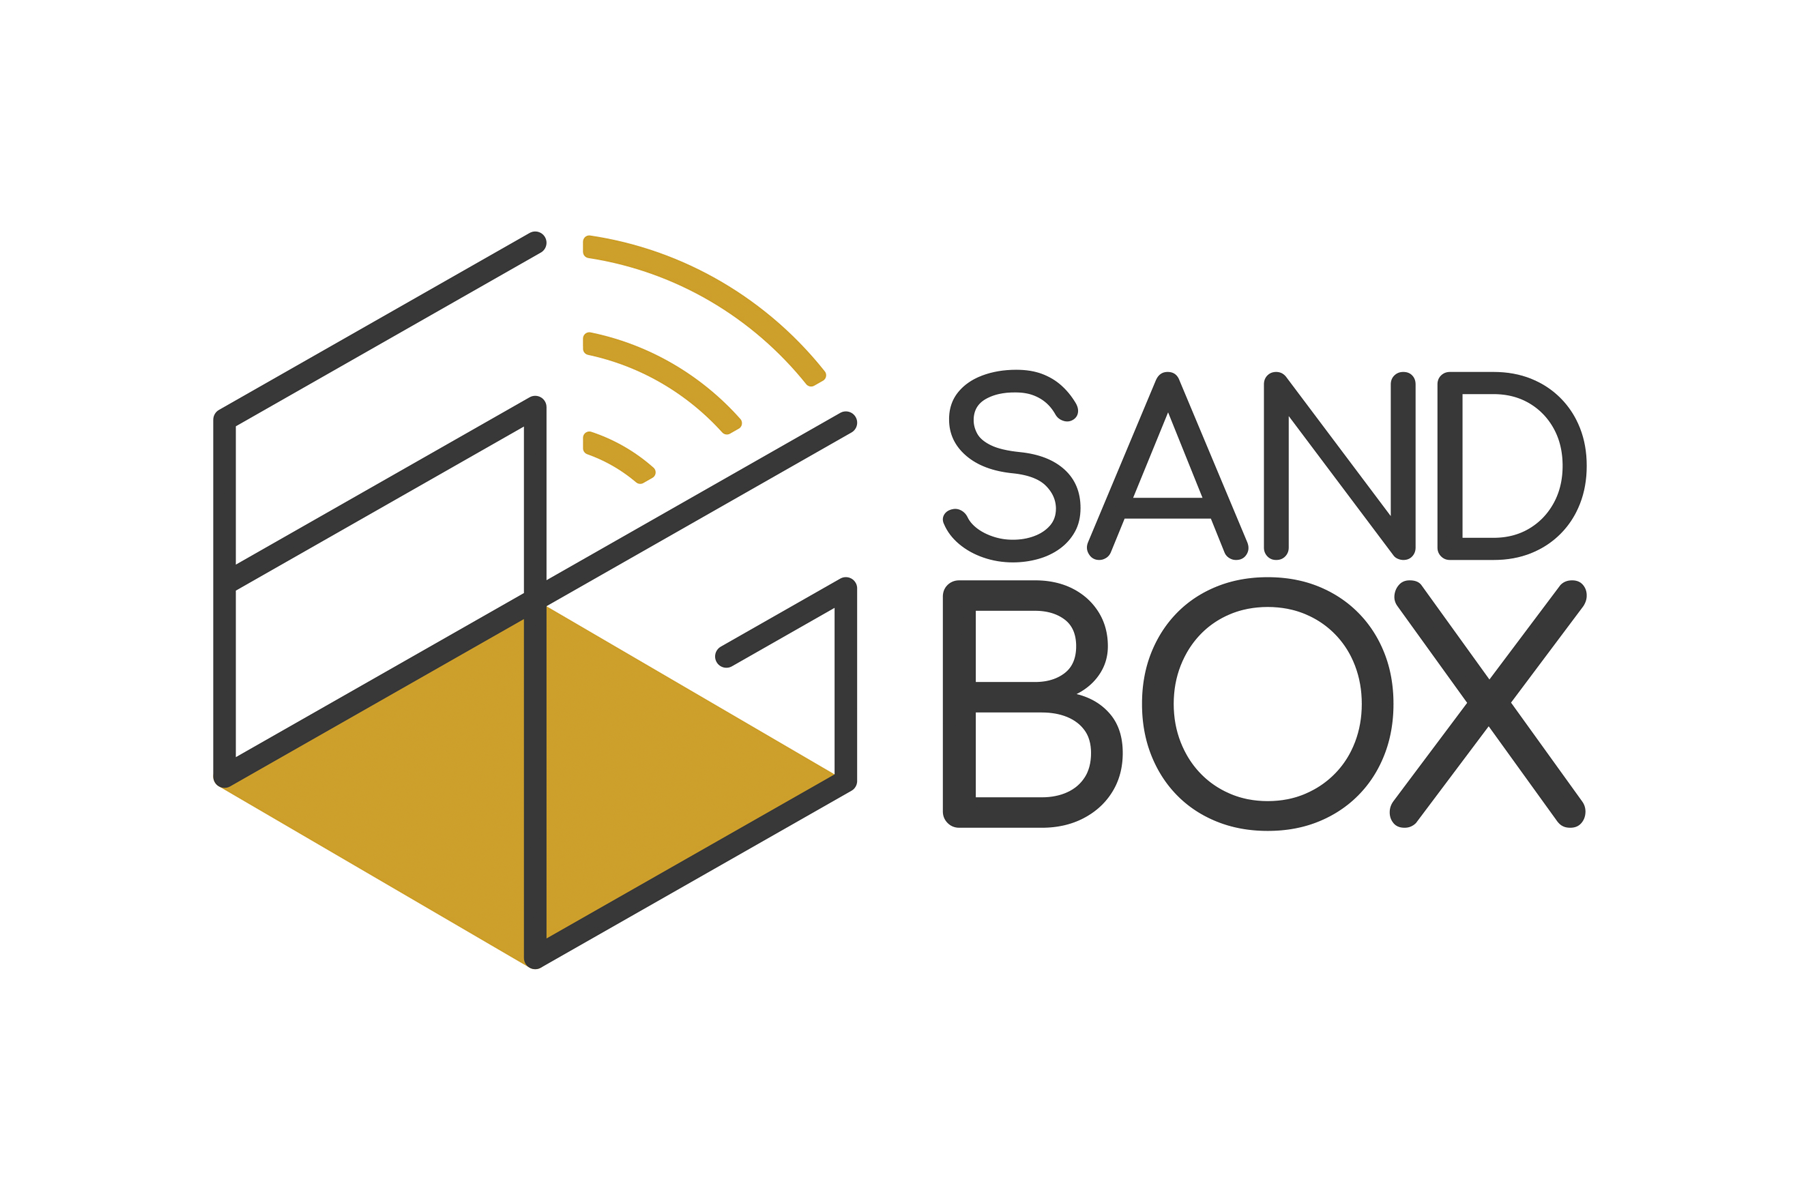 6G-SANDBOX firma un Memorándum de Entendimiento con la Agencia Espacial Europea para integrar satélites con comunicaciones 5G y 6G.